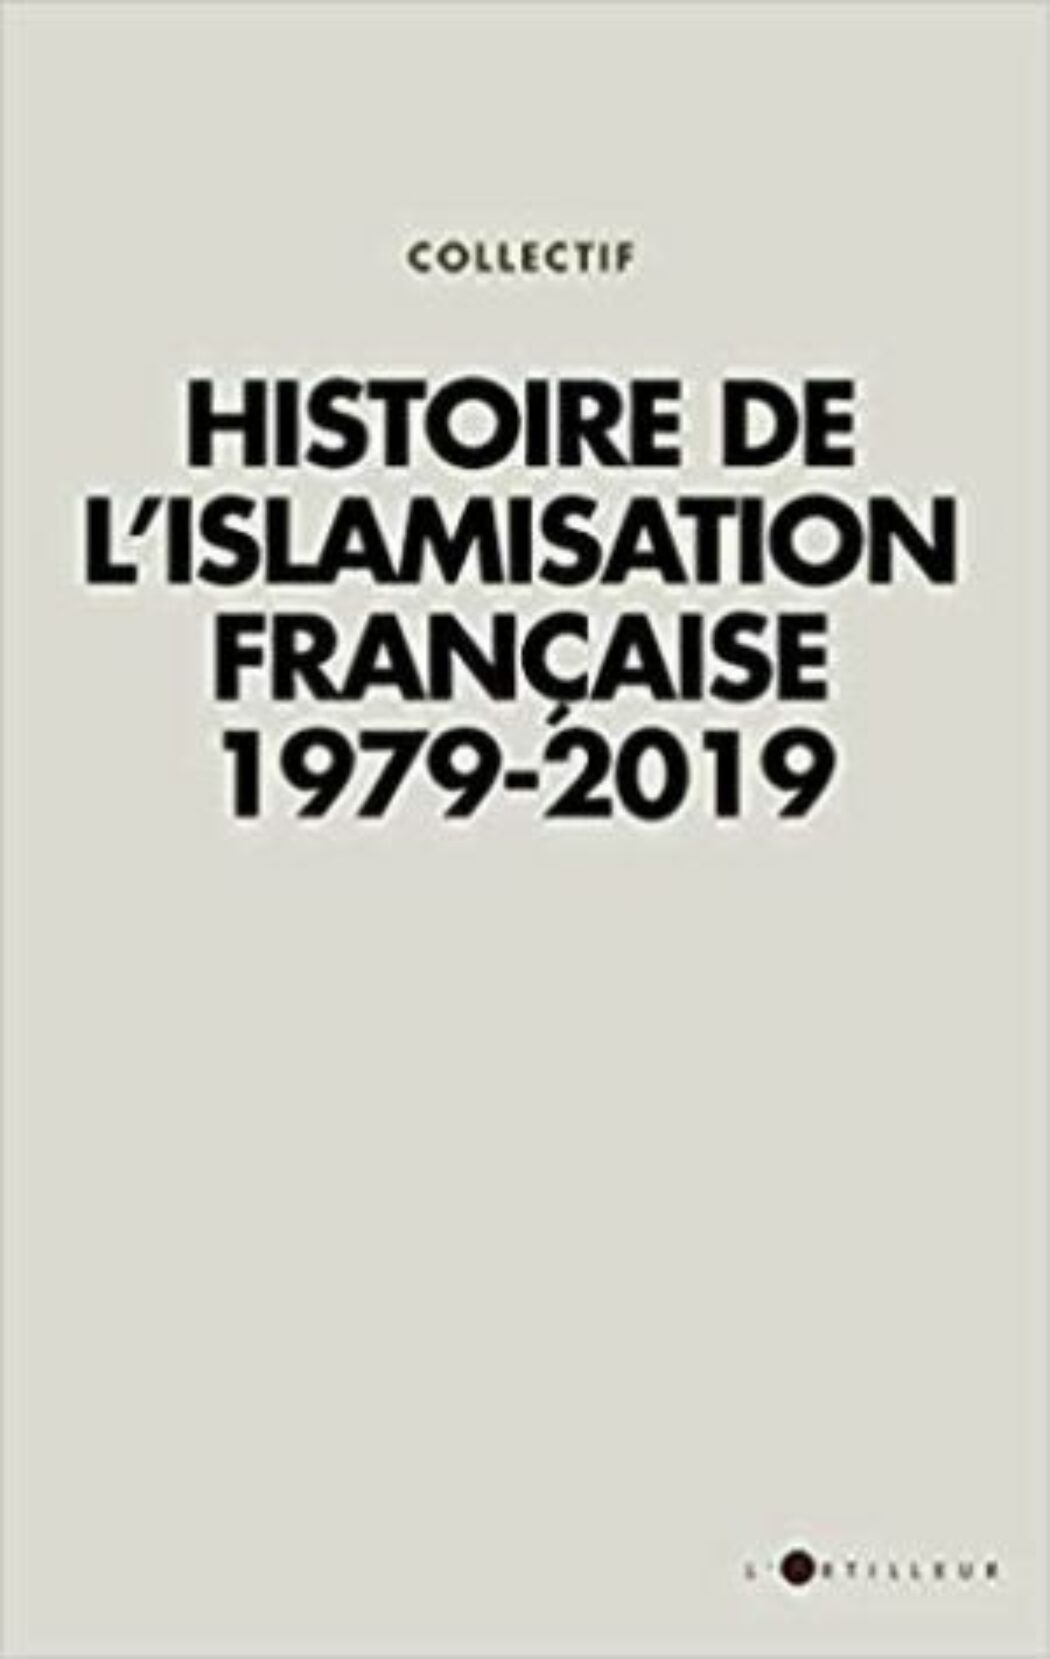 Histoire de l’islamisation française : le « patriotisme inclusif » d’Emmanuel Macron en est-il le prochain chapitre ?